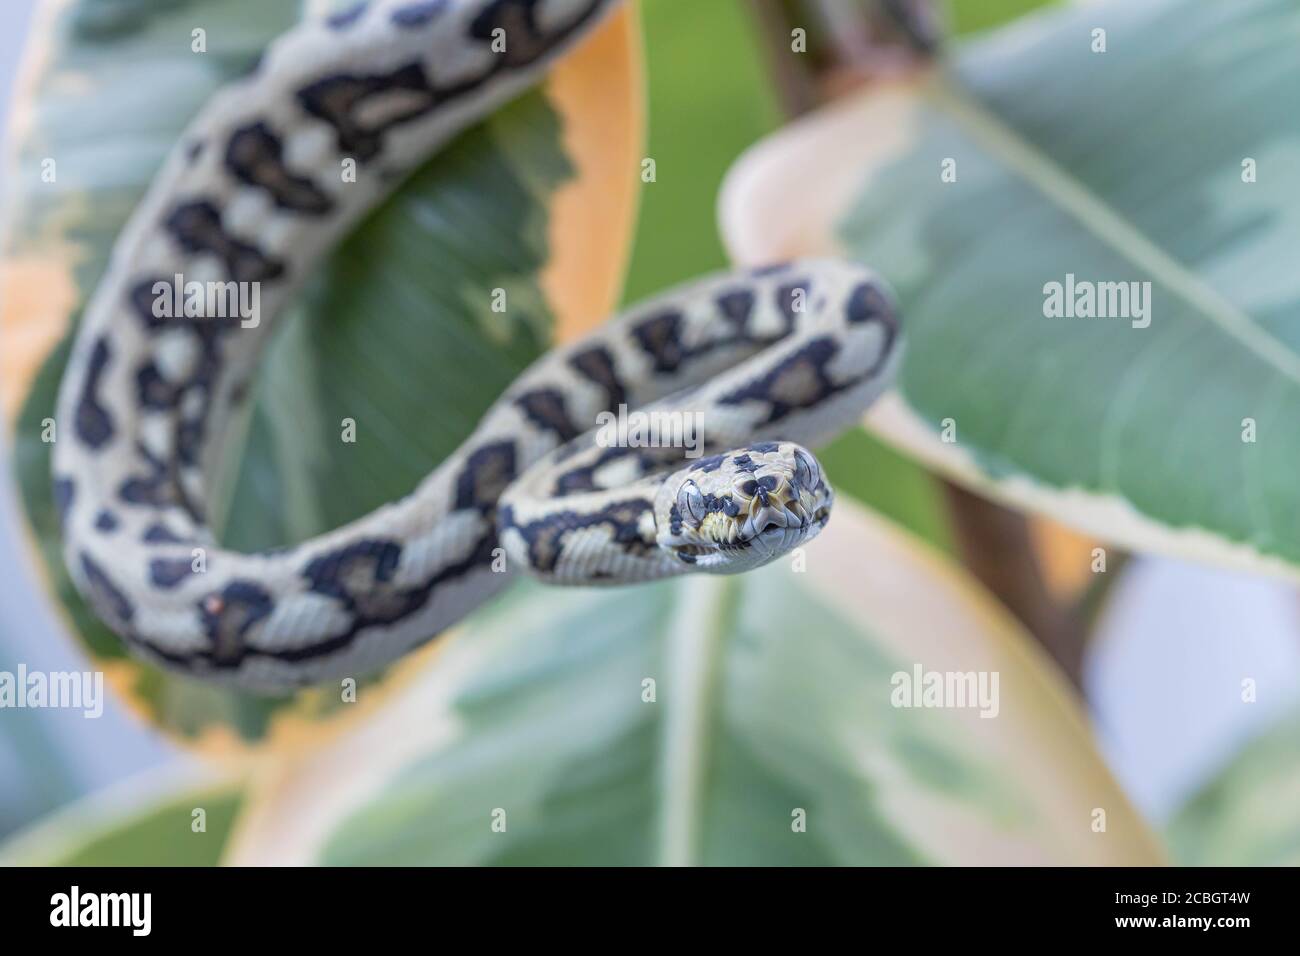 Morelia spilota. Macro de serpent accroché sur les feuilles de caoutchouc fig. et regardant l'appareil photo. Animal exotique. Gros plan. Papier peint, affiche, fond d'écran Banque D'Images